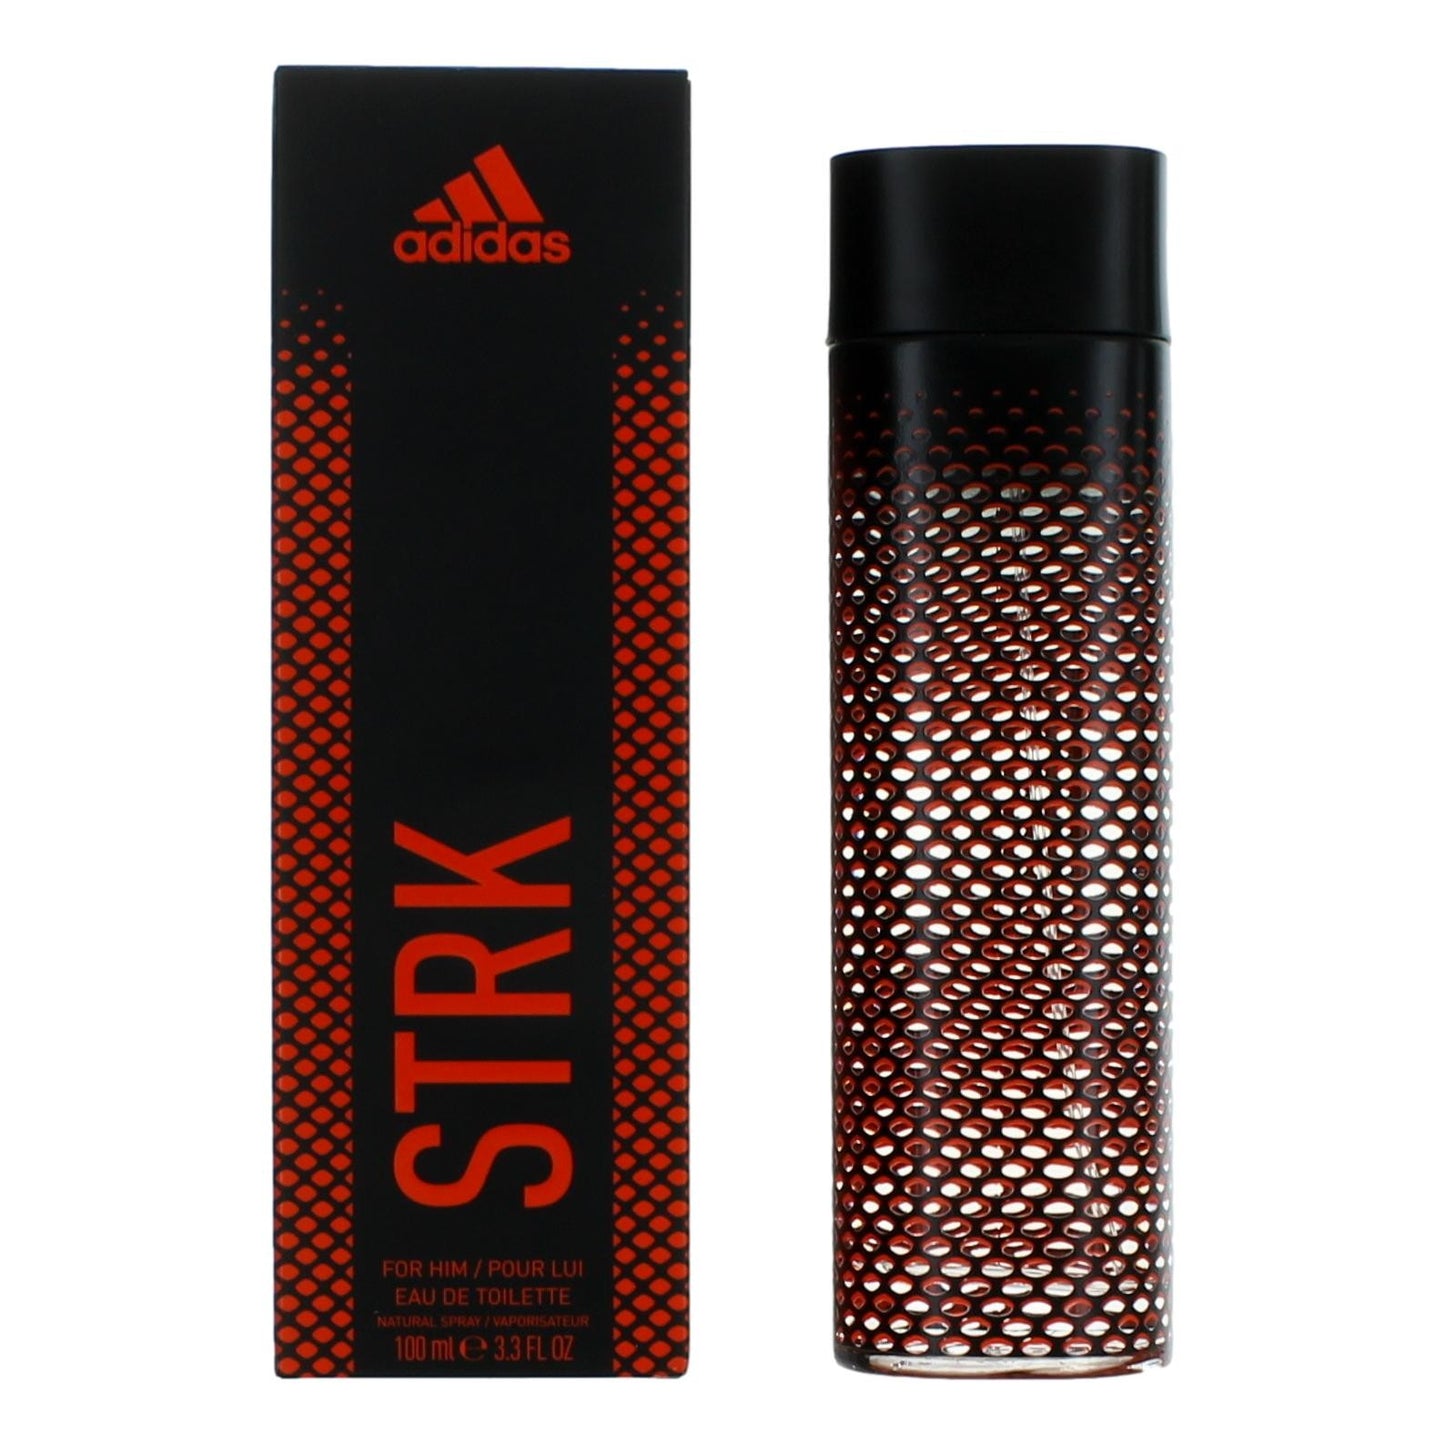 Adidas Sport Strk by Adidas